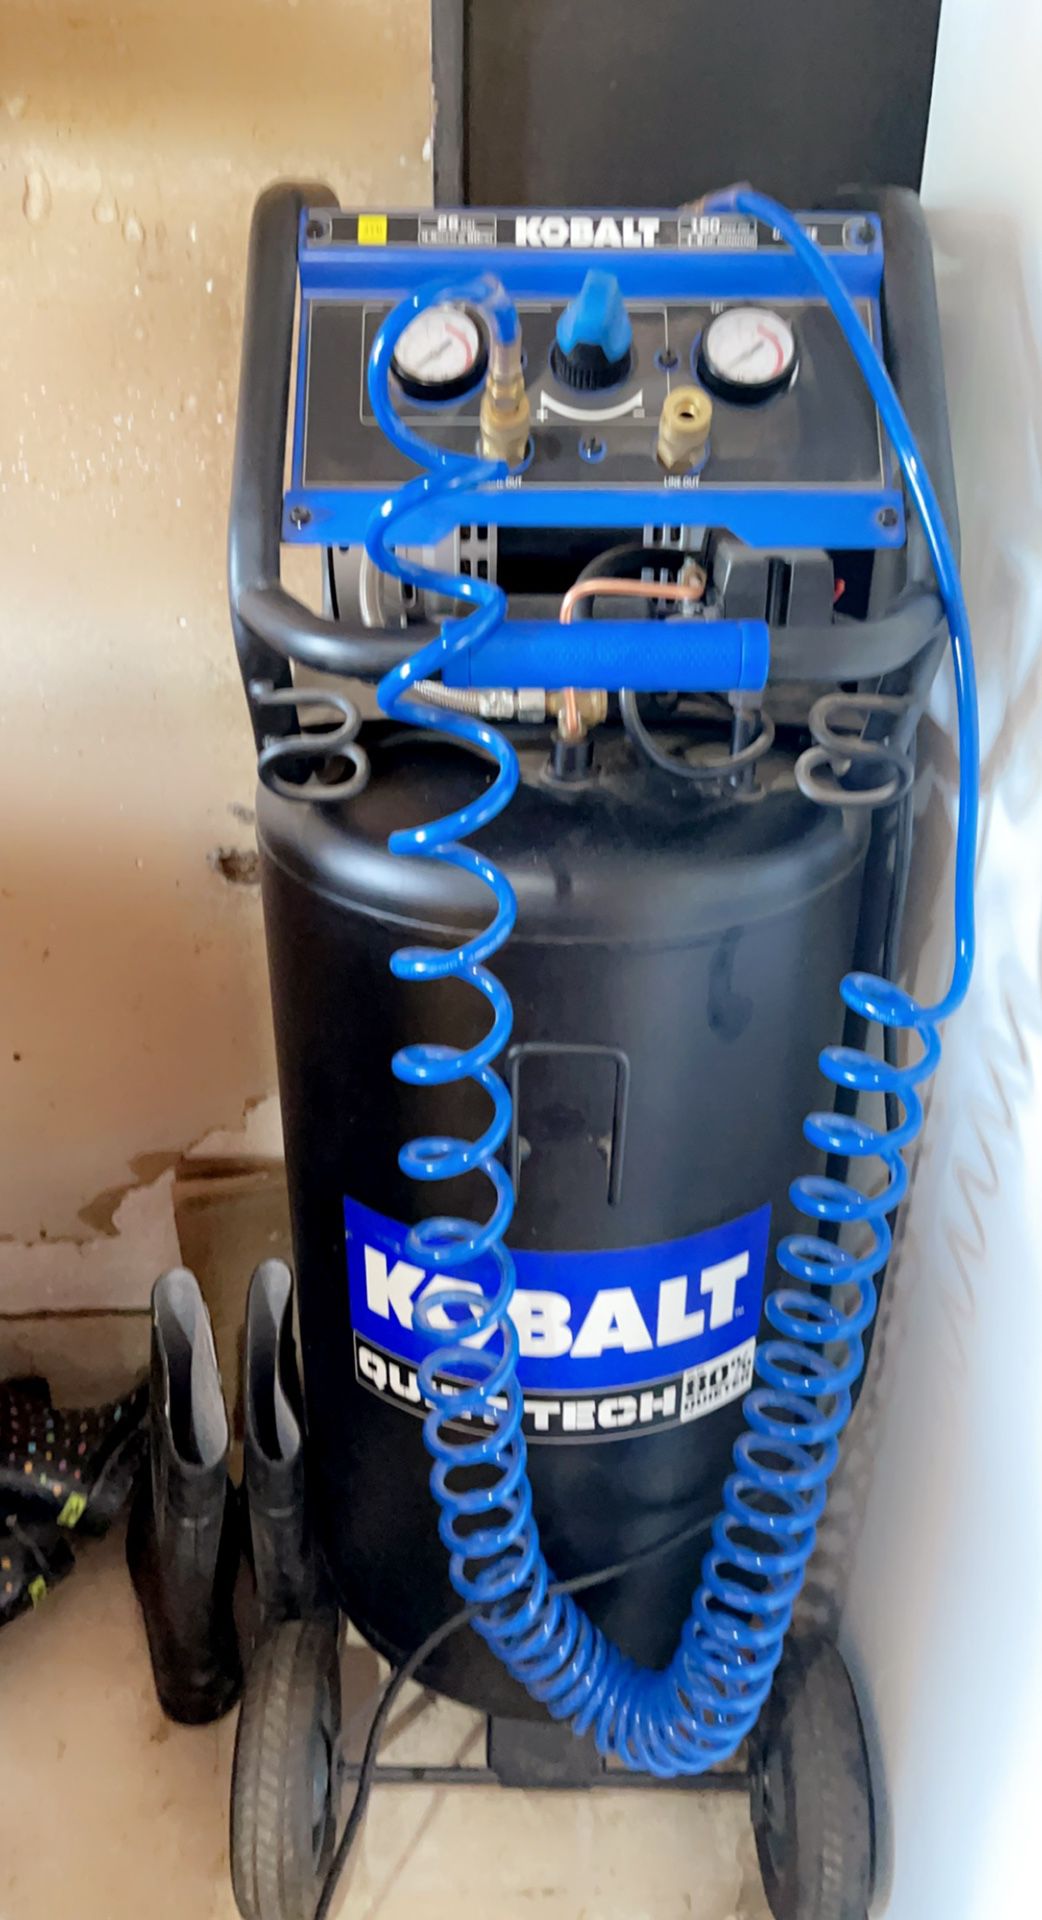 Kolbalt Quiet Air Compressor 